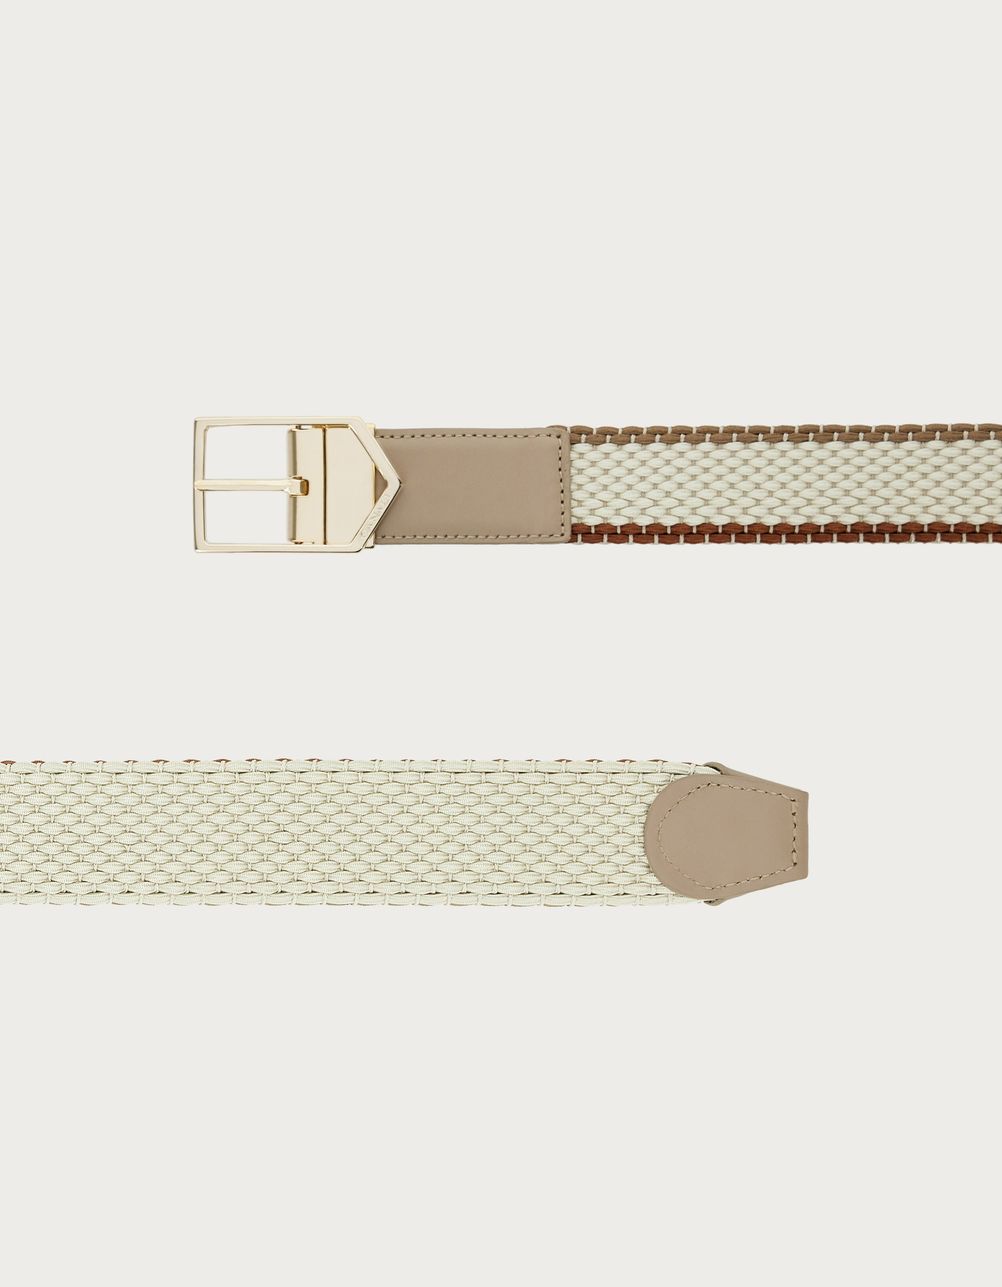 Beige and brown braided belt